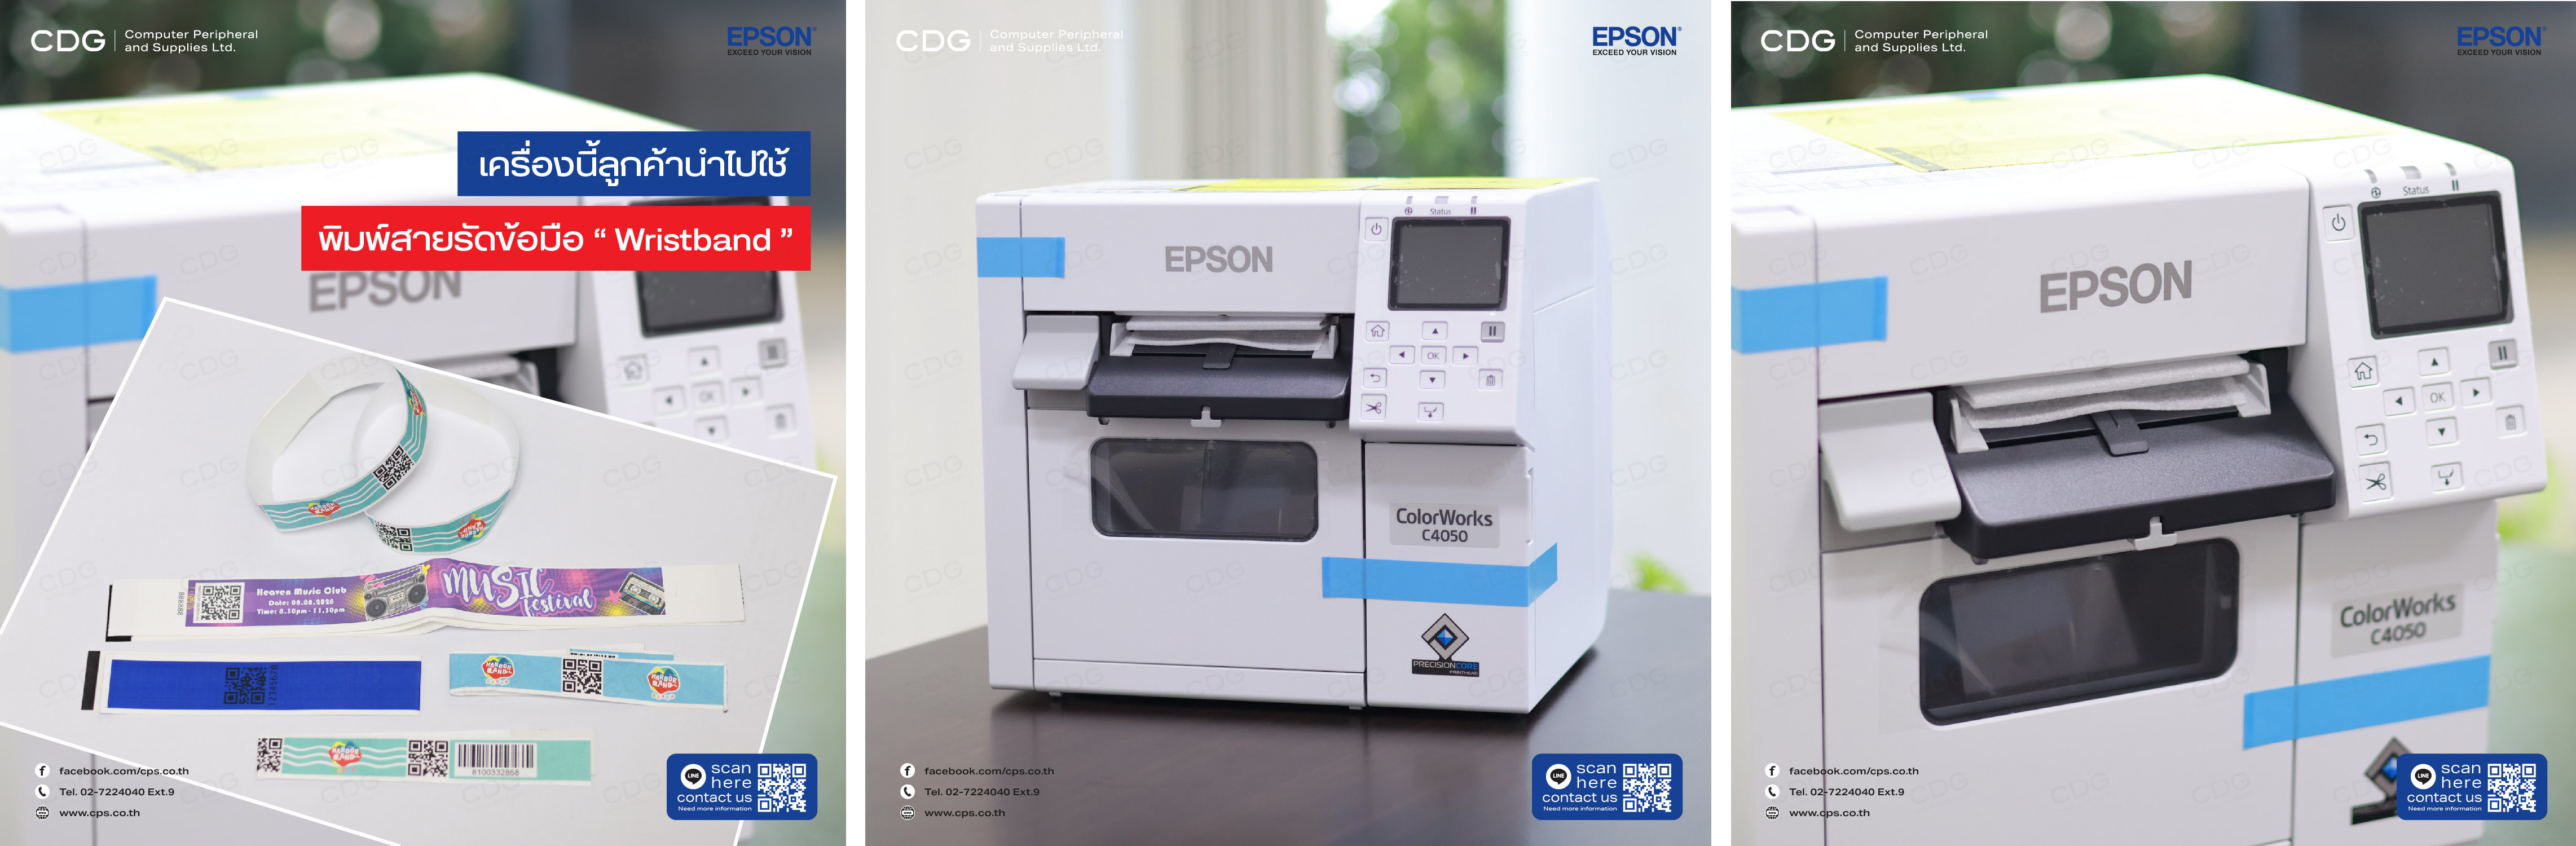 เครื่องพิมพ์ฉลากบาร์โค้ดสี Epson Label Printer รุ่น C4050